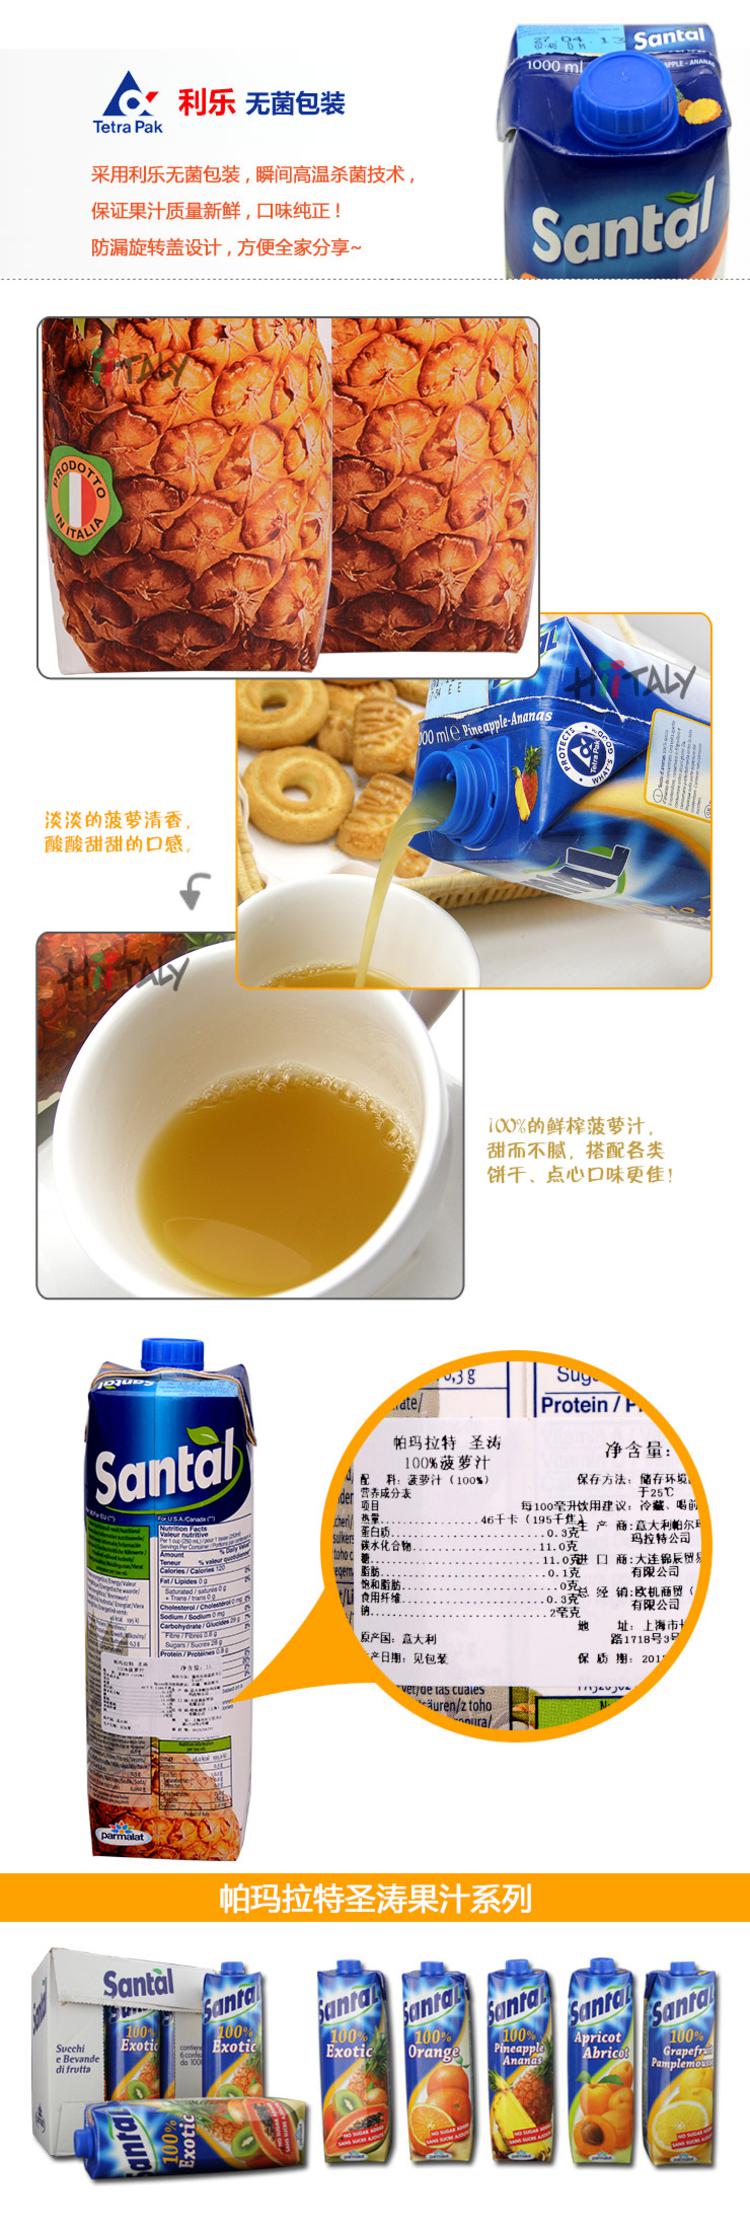 【淘最意大利】Parmalat/帕玛拉特 100%鲜榨菠萝汁1L 果汁饮料 意大利进口零食品